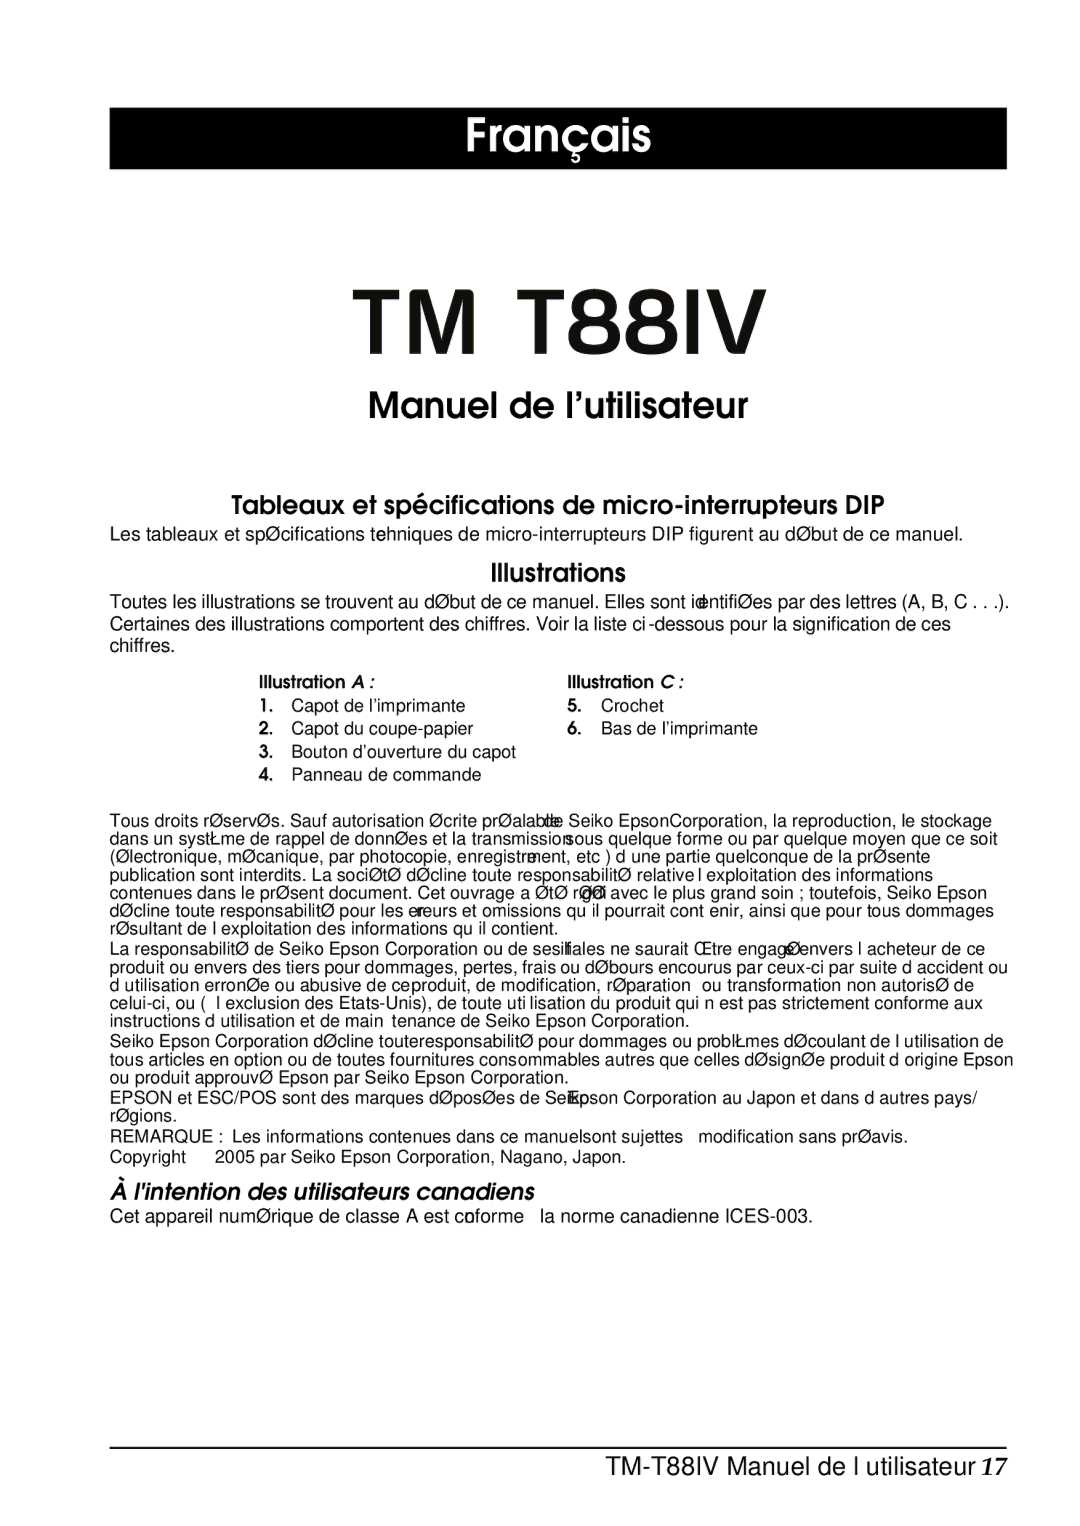 Epson T88IV user manual Français, Manuel de l’utilisateur, Tableaux et spécifications de micro-interrupteurs DIP 